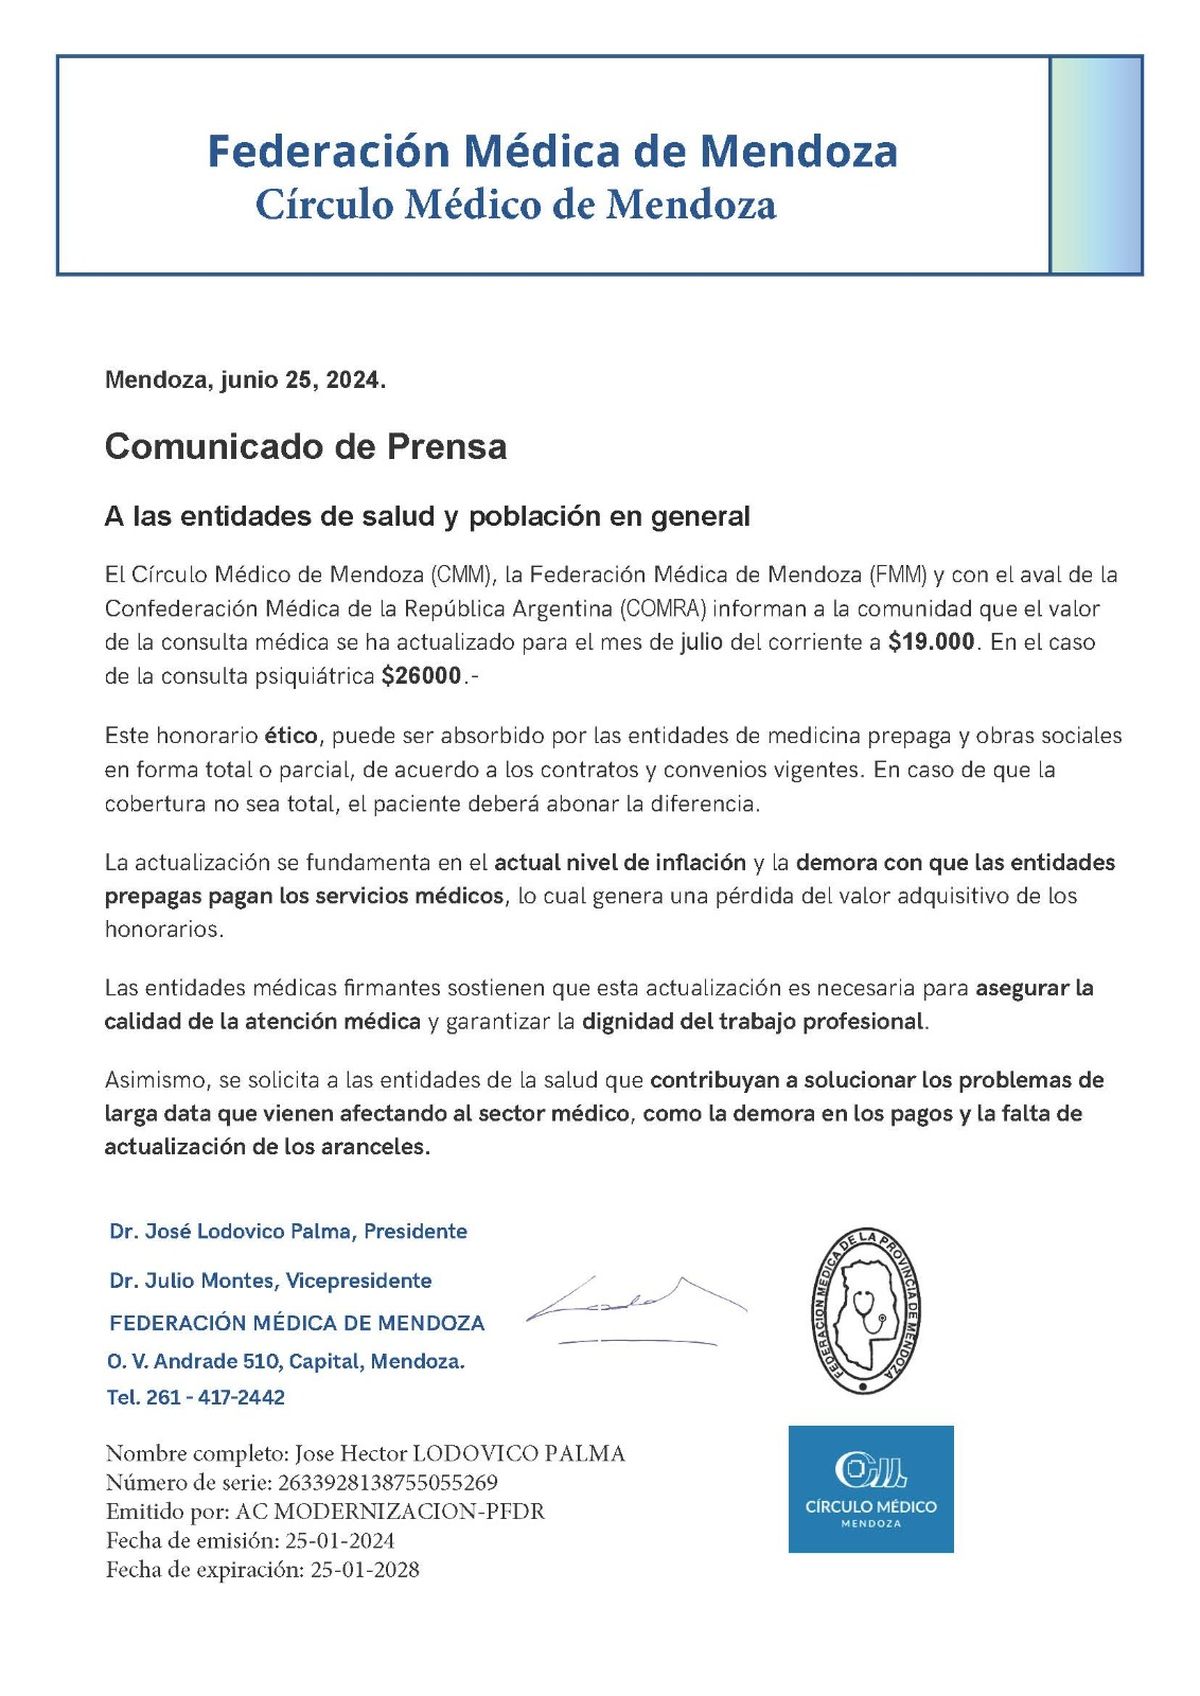 El comunicado oficial de la Federación Médica de Mendoza por el aumento de la consulta médica.